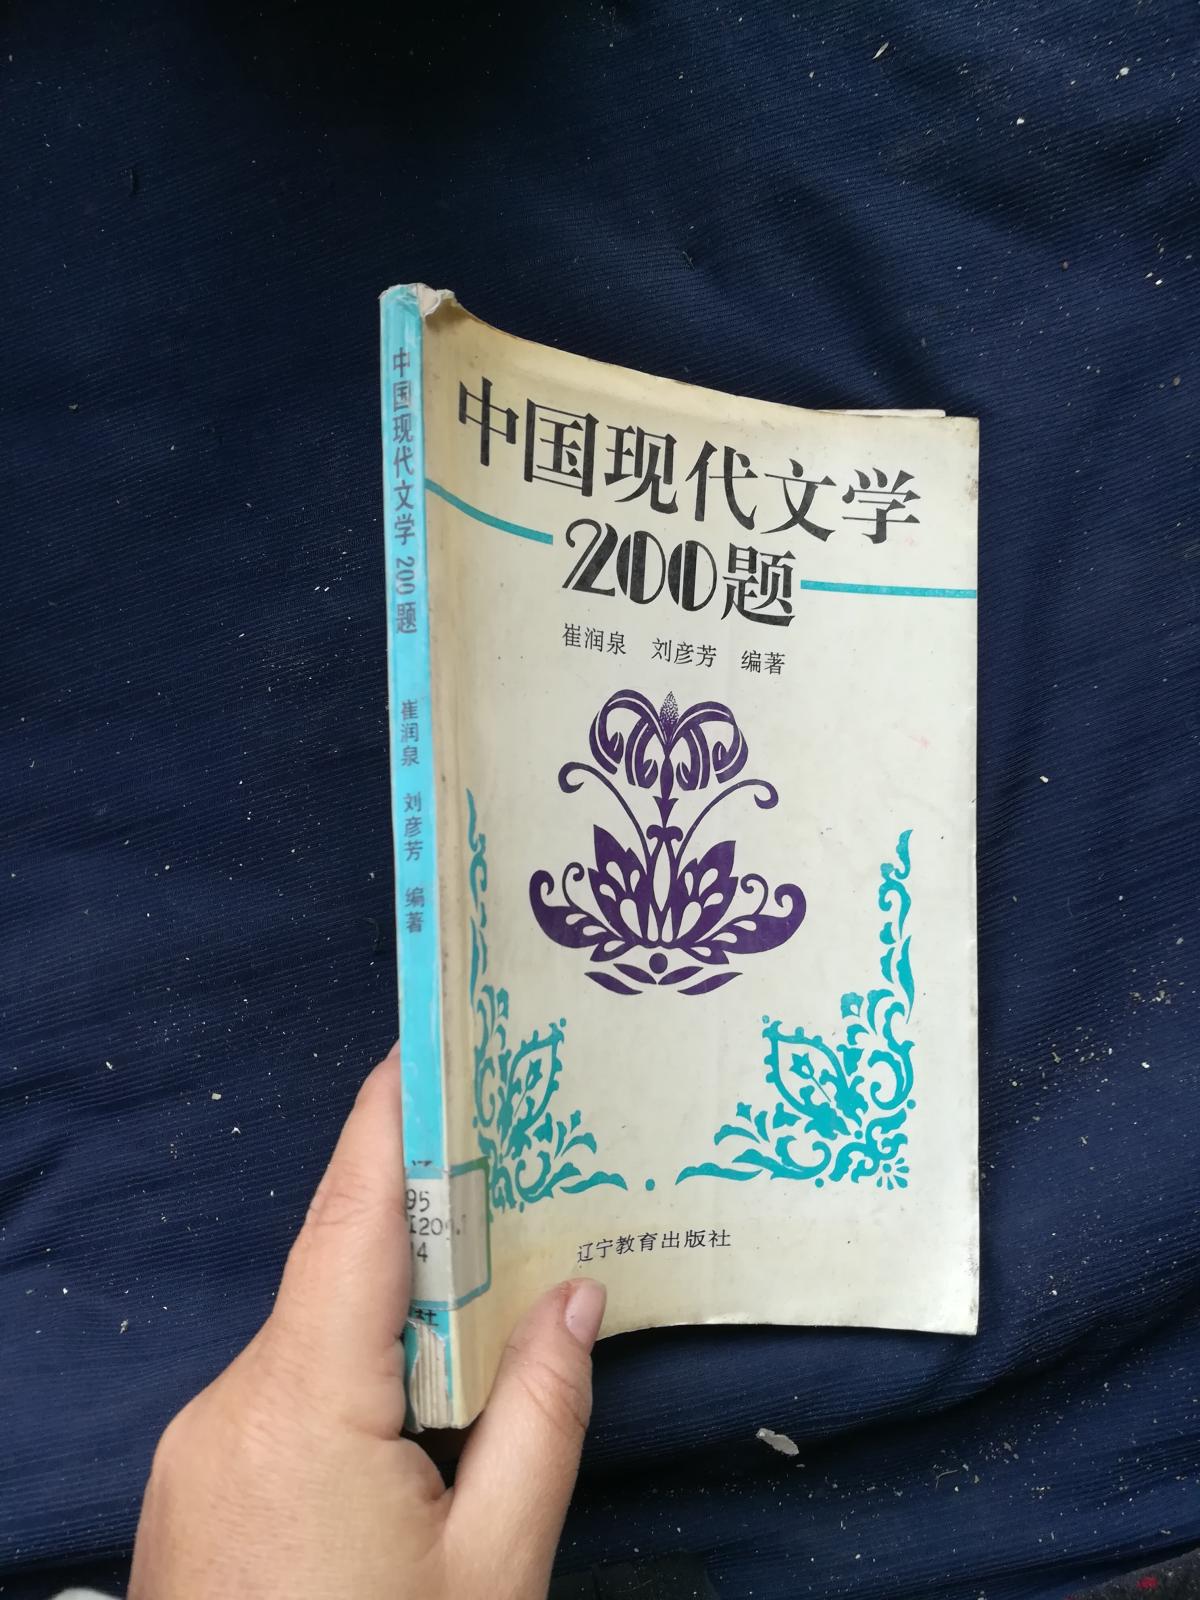 中国现代文学200题。